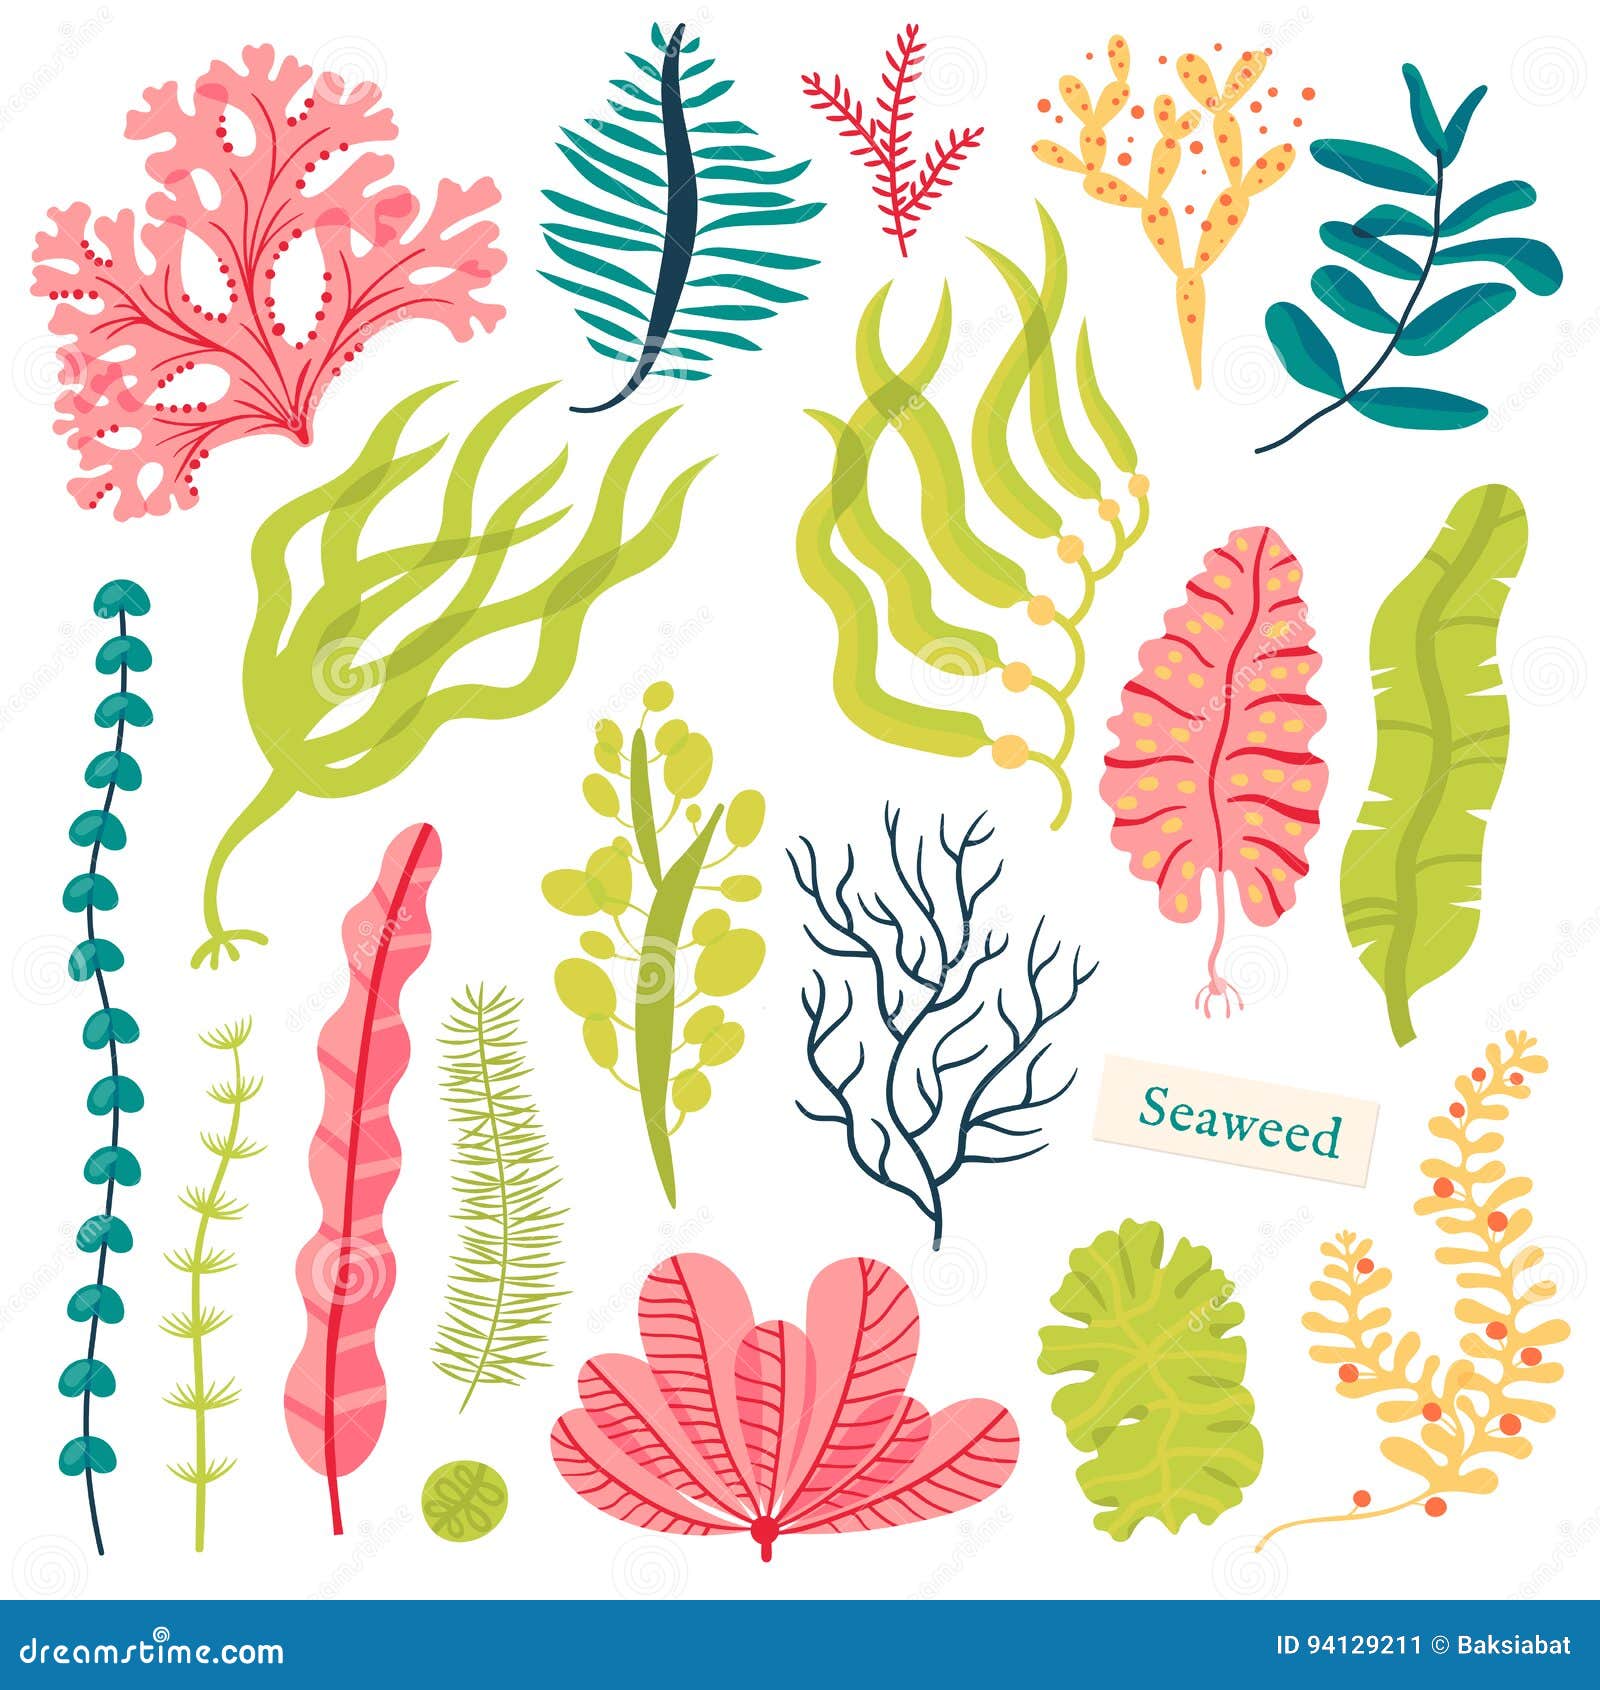 世界海草日：健康的海草，健康的地球- 中国生物多样性保护与绿色发展基金会